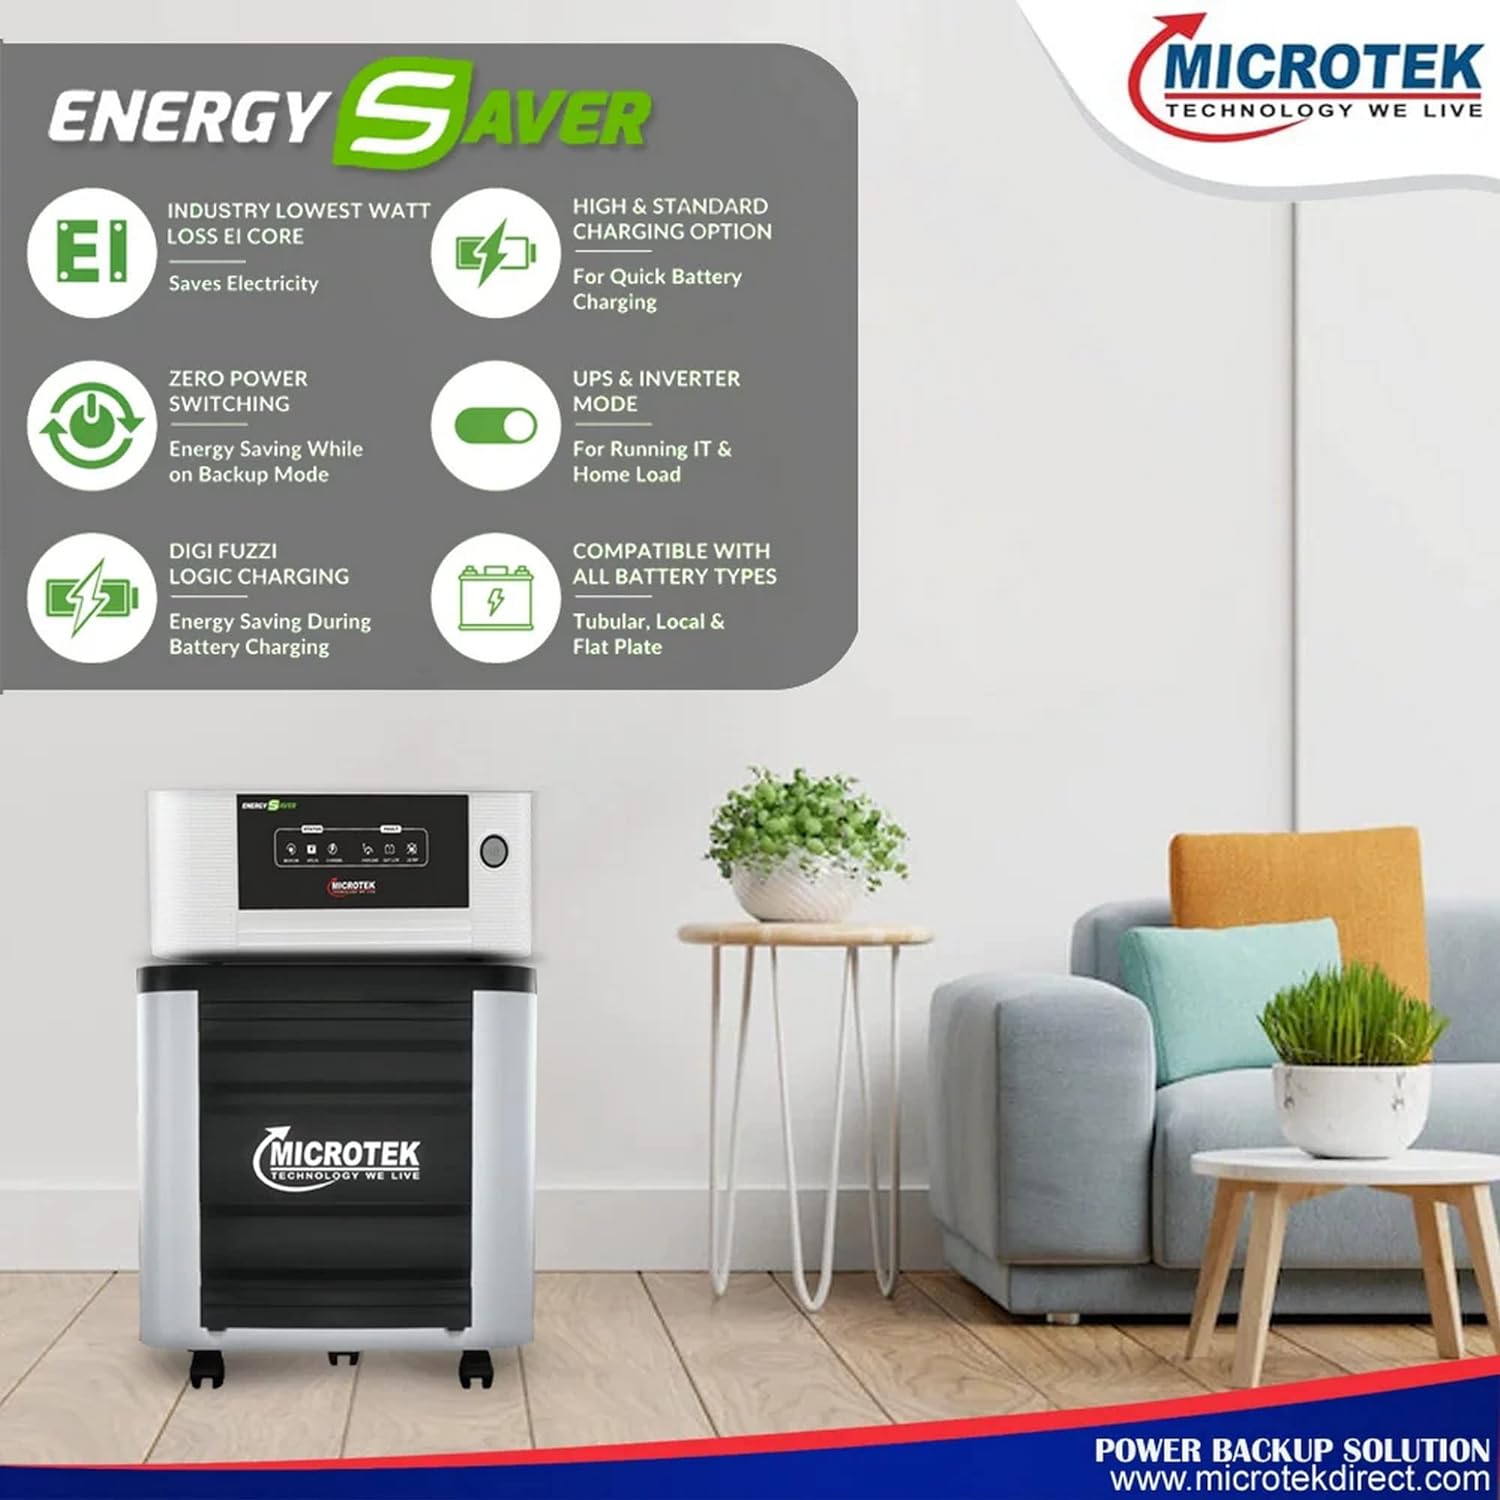 Microtek Energy Saver Digital UPS 1825 (24V) Inverter For Home UPS-Standard